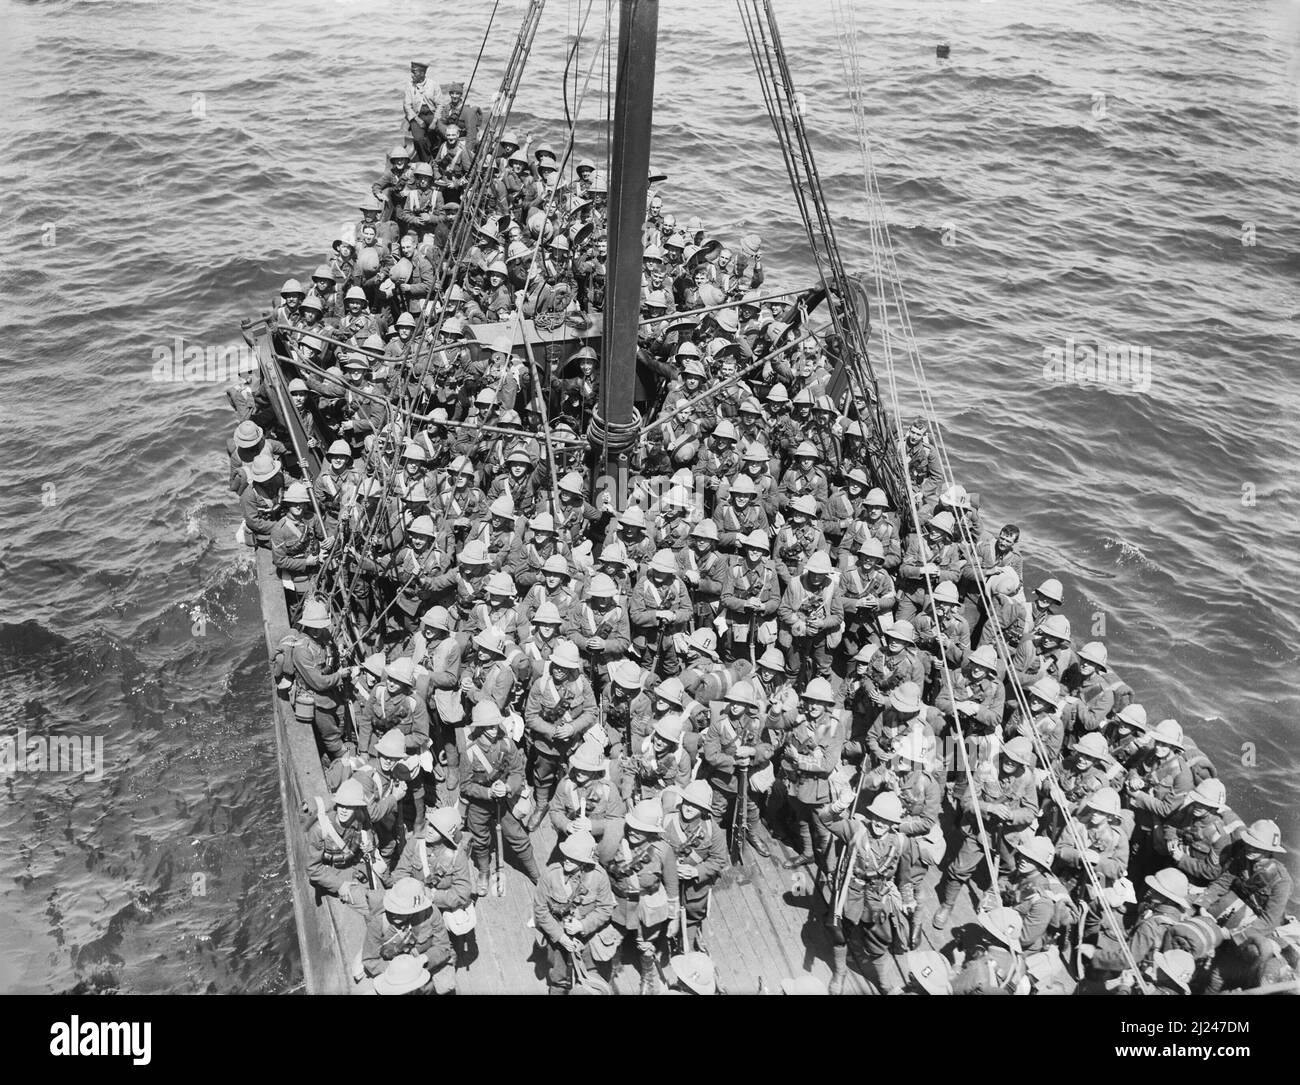 Lancashire Fusiliers de la Brigade 125th, 42nd (East Lancashire) Division, en direction de Cape Helles, Gallipoli, mai 1915. Les soldats viennent de débarquez à bord du Trawler 318 du transport SS Nile, du pont duquel la photo a été prise. Banque D'Images